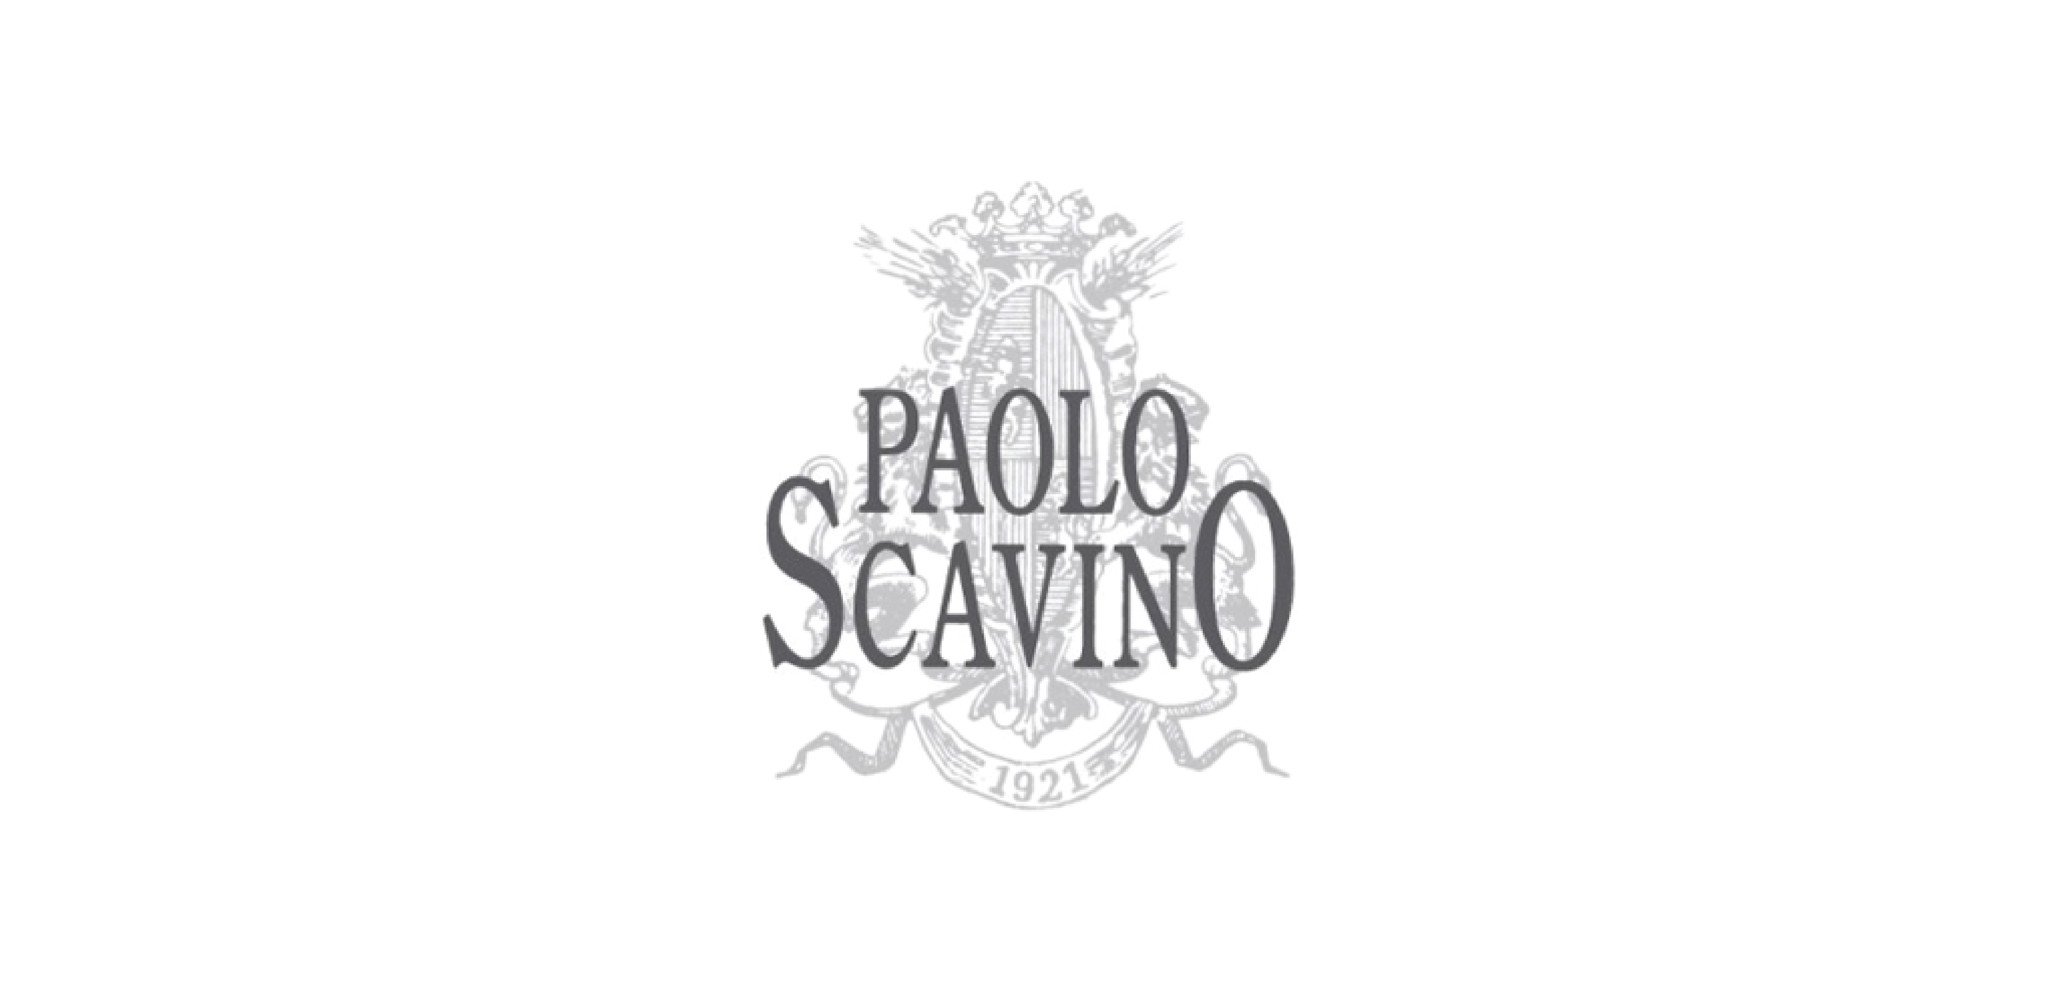 PAOLO SCAVINO